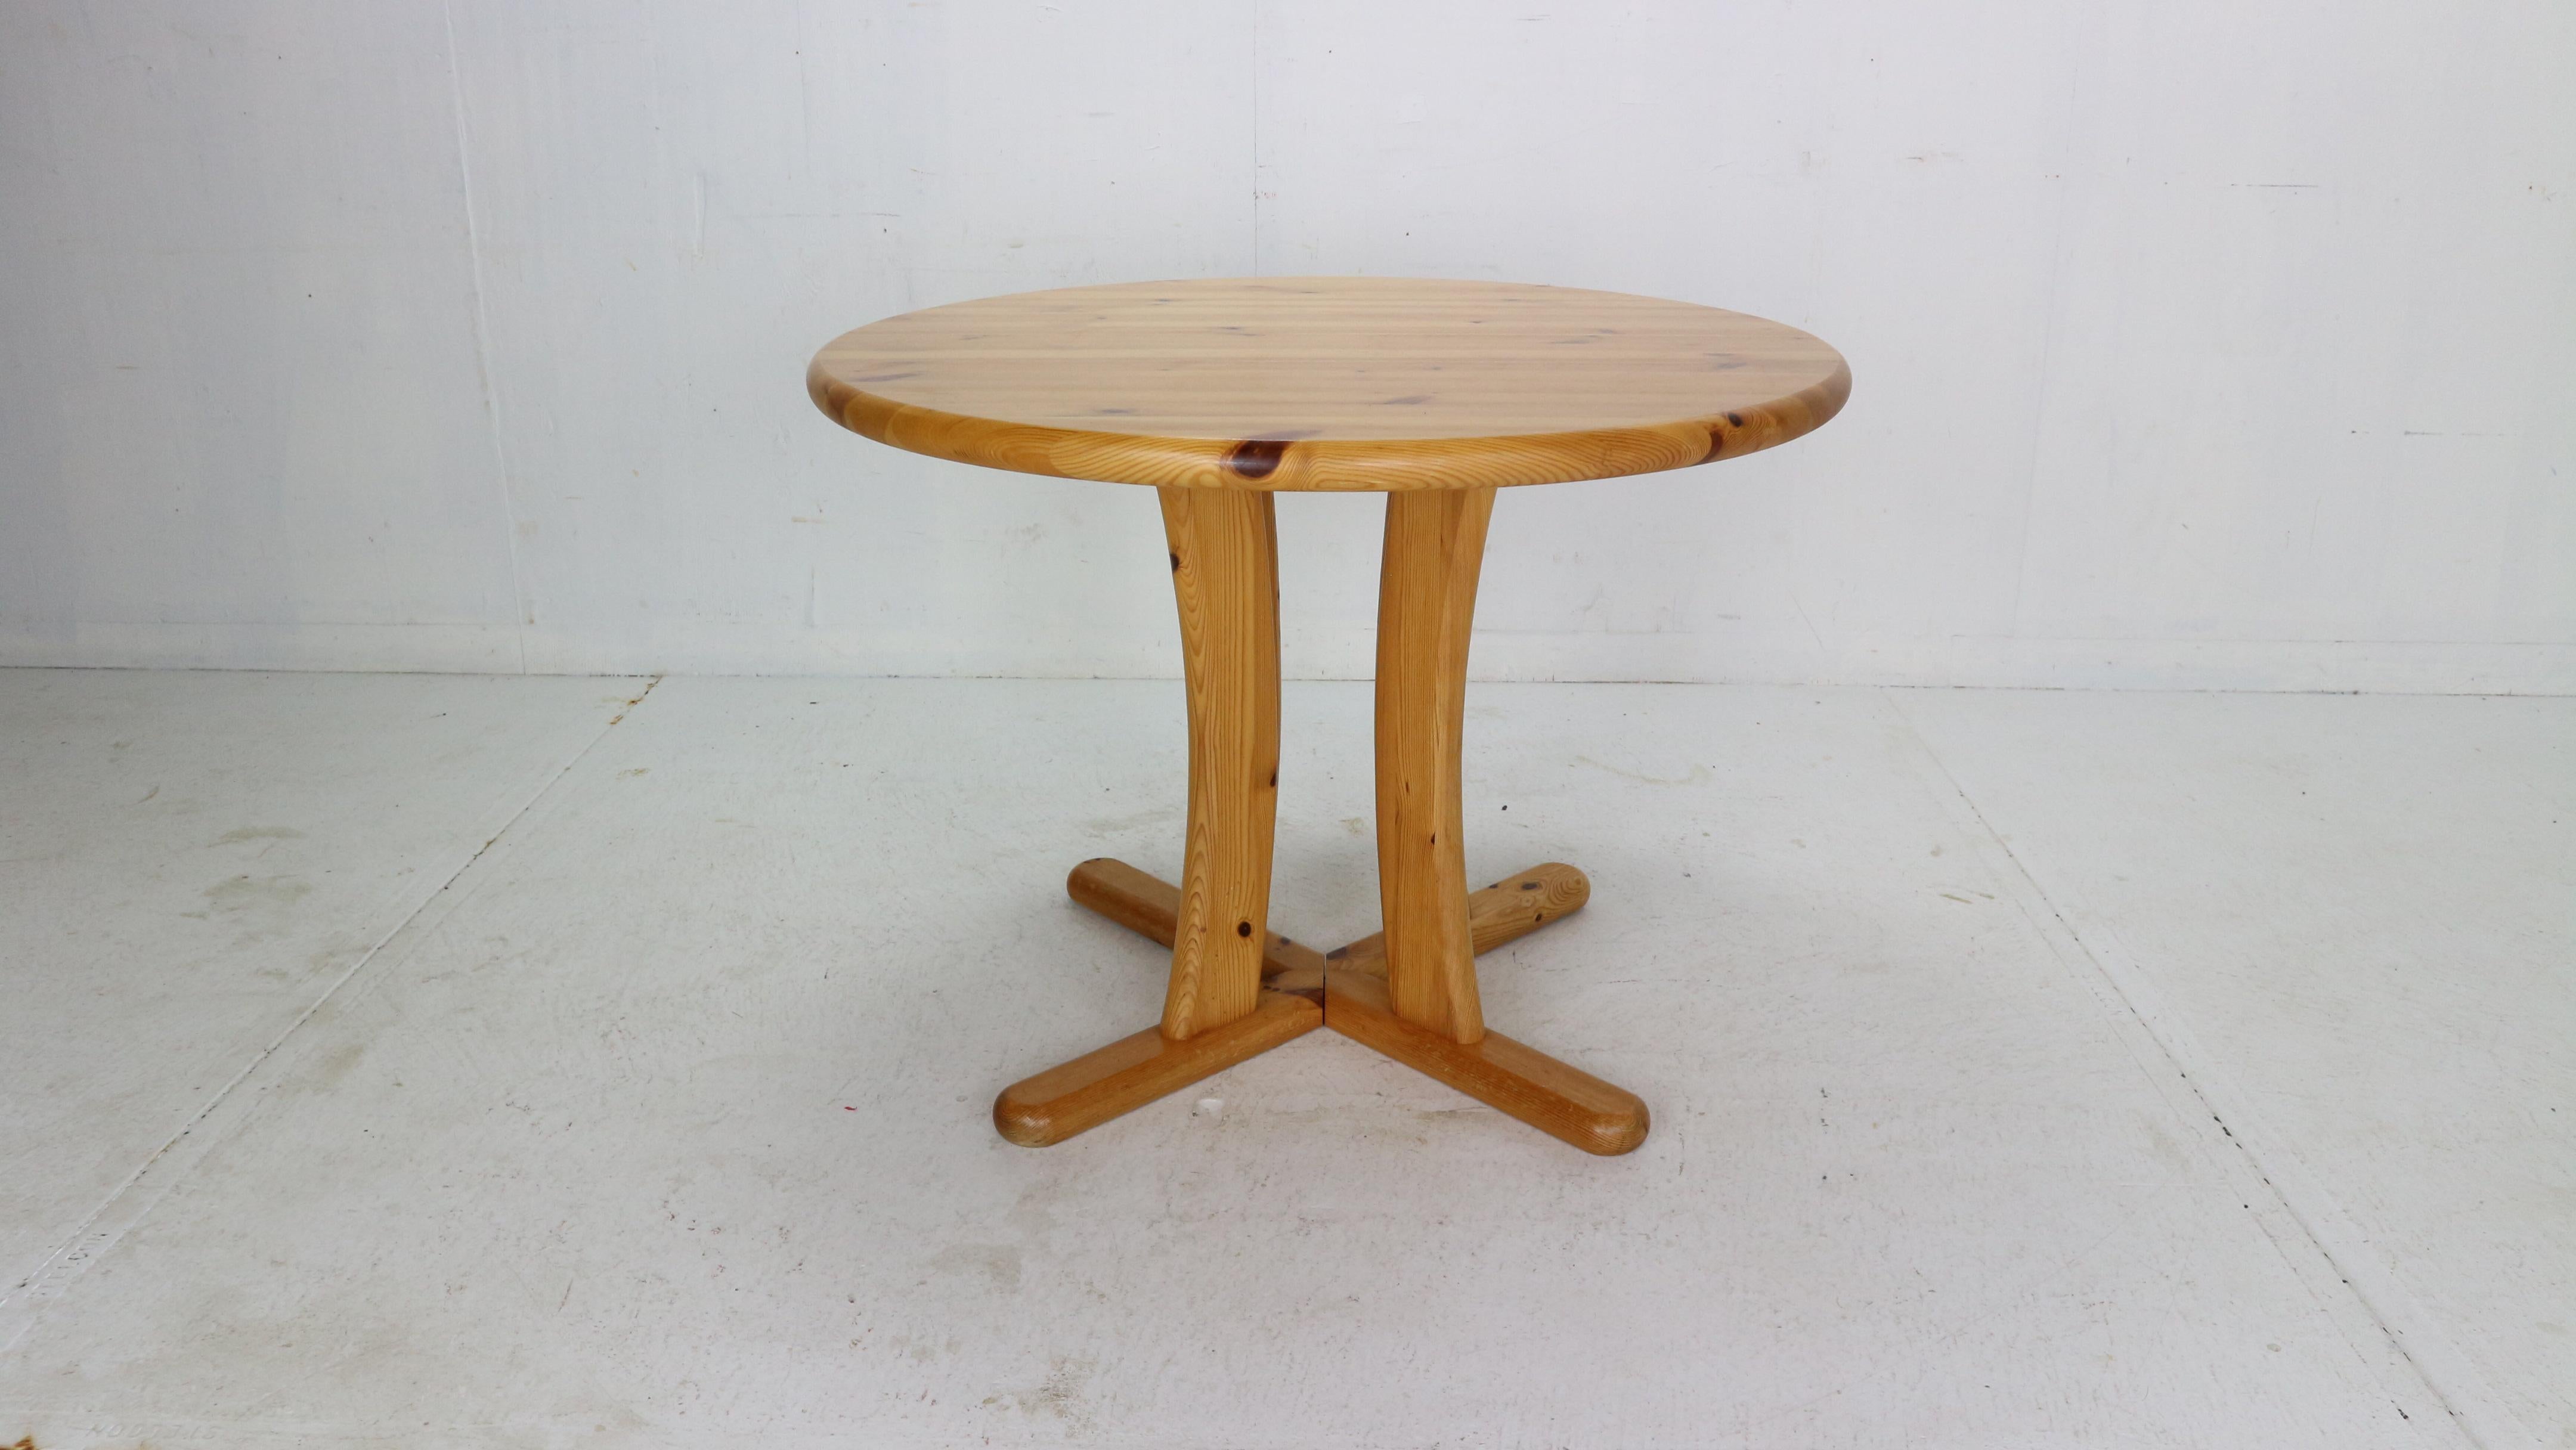 Runder Esstisch der skandinavischen Moderne im Stil von Rainer Daumiller aus den 1970er Jahren in Dänemark.
Der Tisch ist aus massivem Kiefernholz gefertigt, das eine schöne Holzpatina aufweist.
Die gebogenen, dicken Beine machen den Tisch